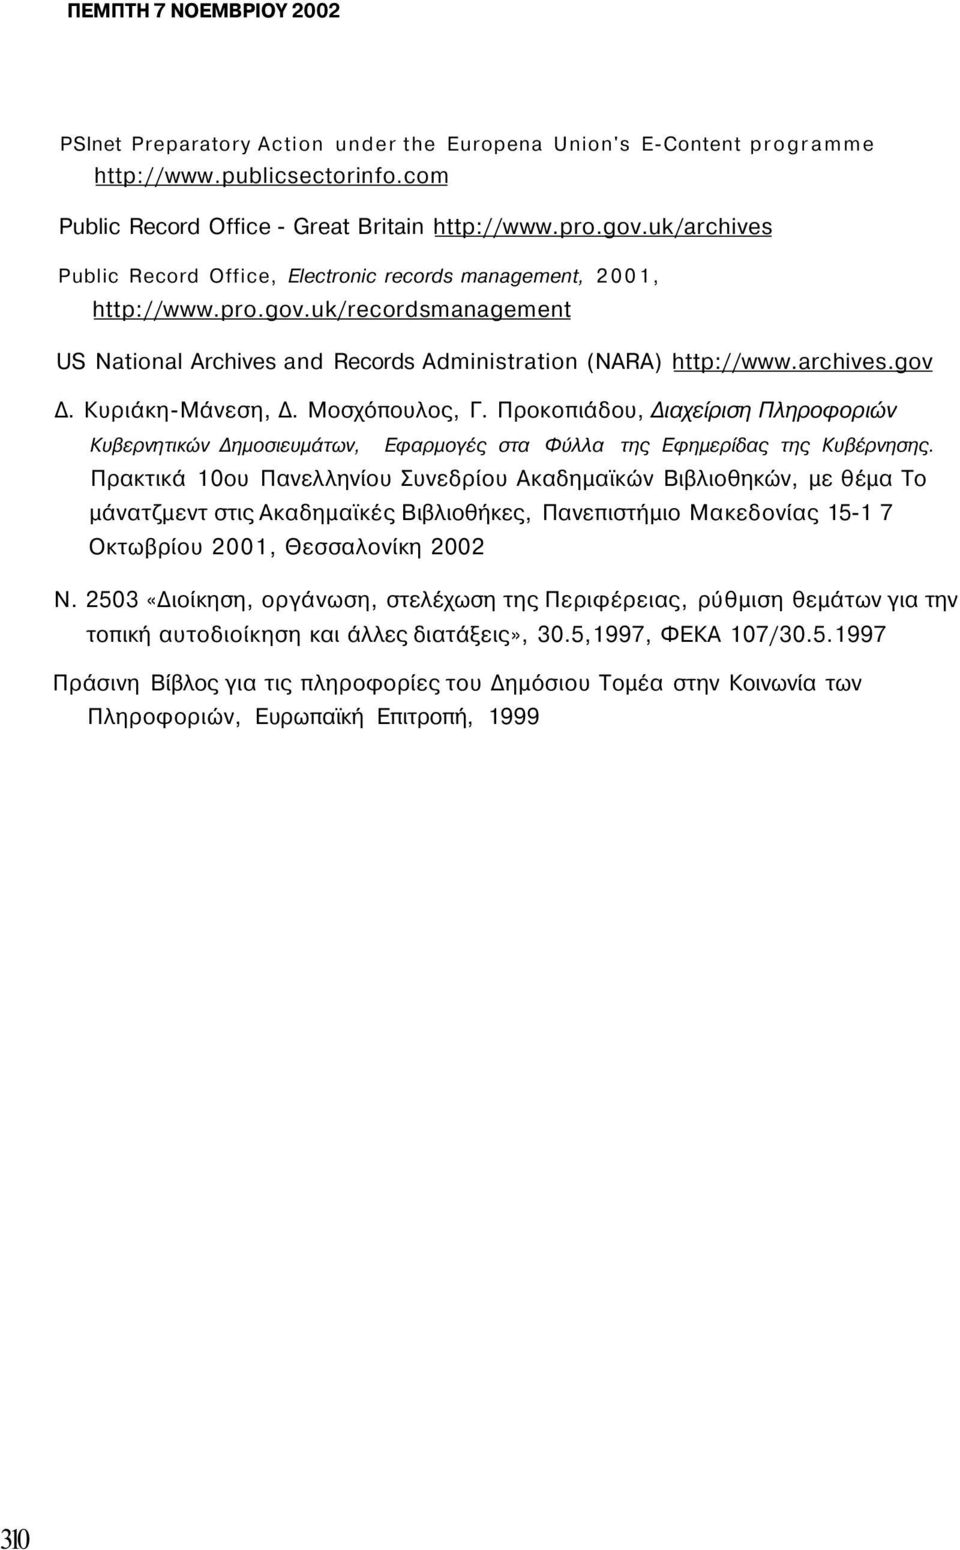 Κυριάκη-Μάνεση, Δ. Μοσχόπουλος, Γ. Προκοπιάδου, Διαχείριση Πληροφοριών Κυβερνητικών Δημοσιευμάτων, Εφαρμογές στα Φύλλα της Εφημερίδας της Κυβέρνησης.